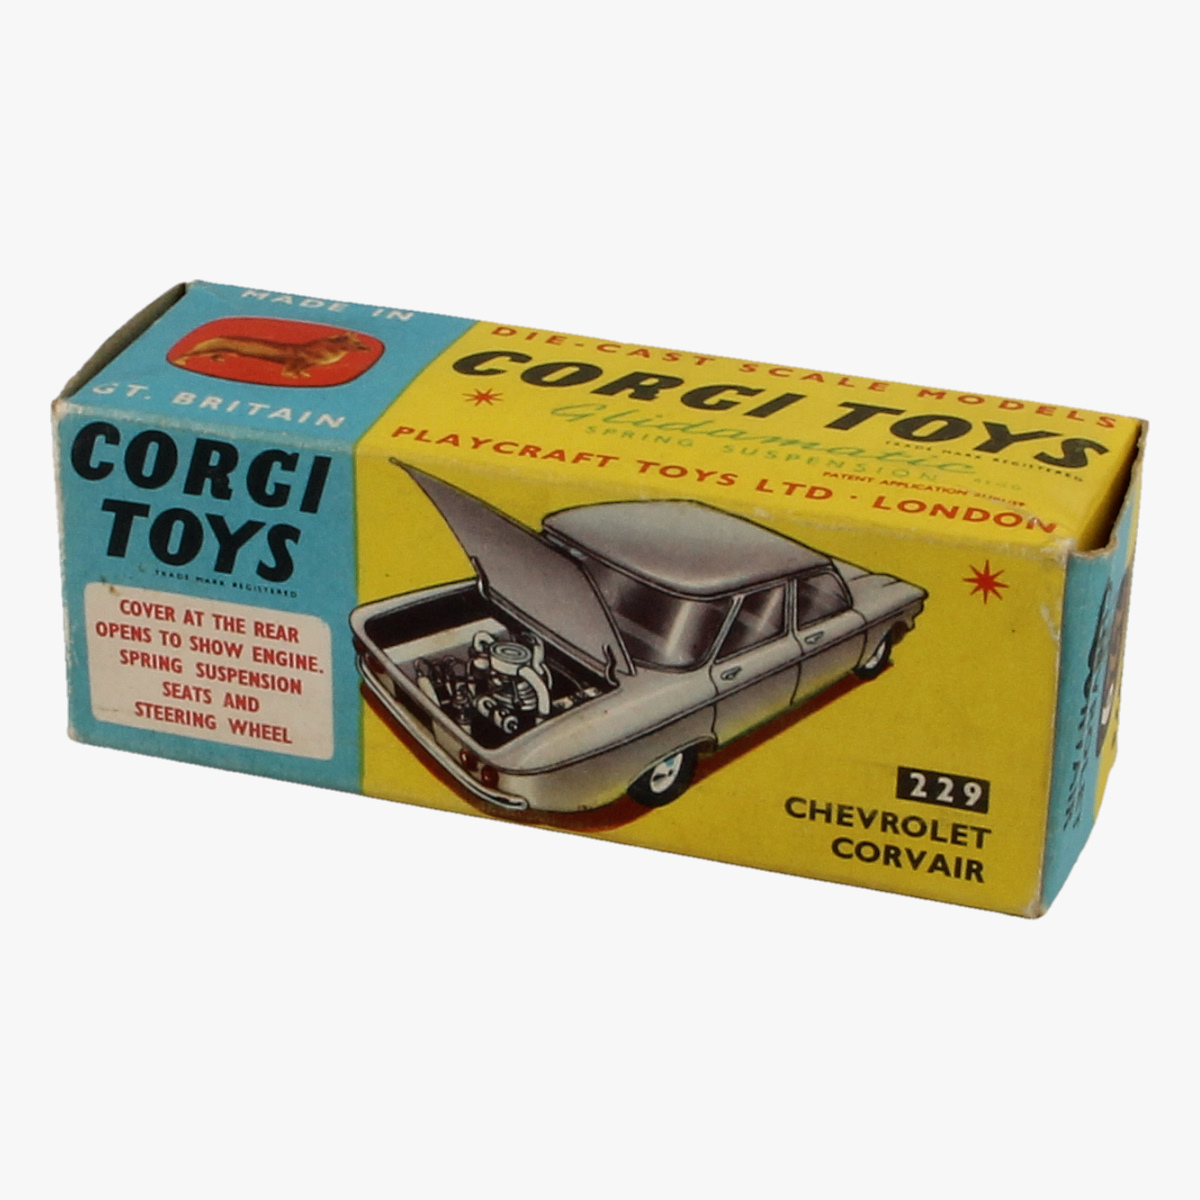 Afbeeldingen van Corgi Toys. Chevrolet Corvair. 229.